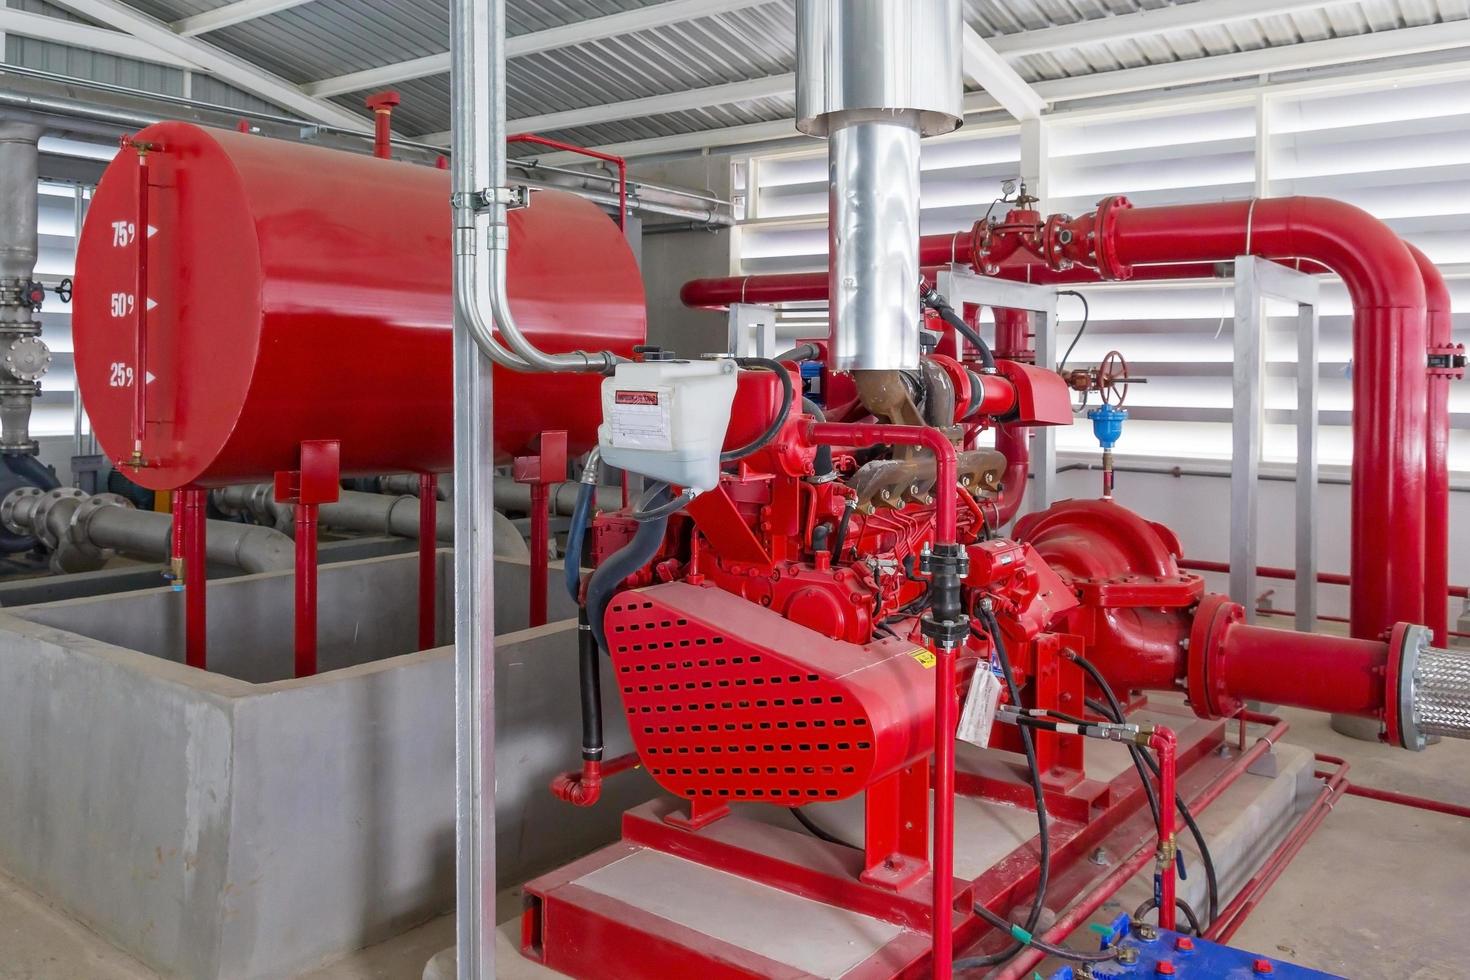 bomba geradora vermelha para tubulação de sprinklers de água e sistema de controle de alarme de incêndio foto